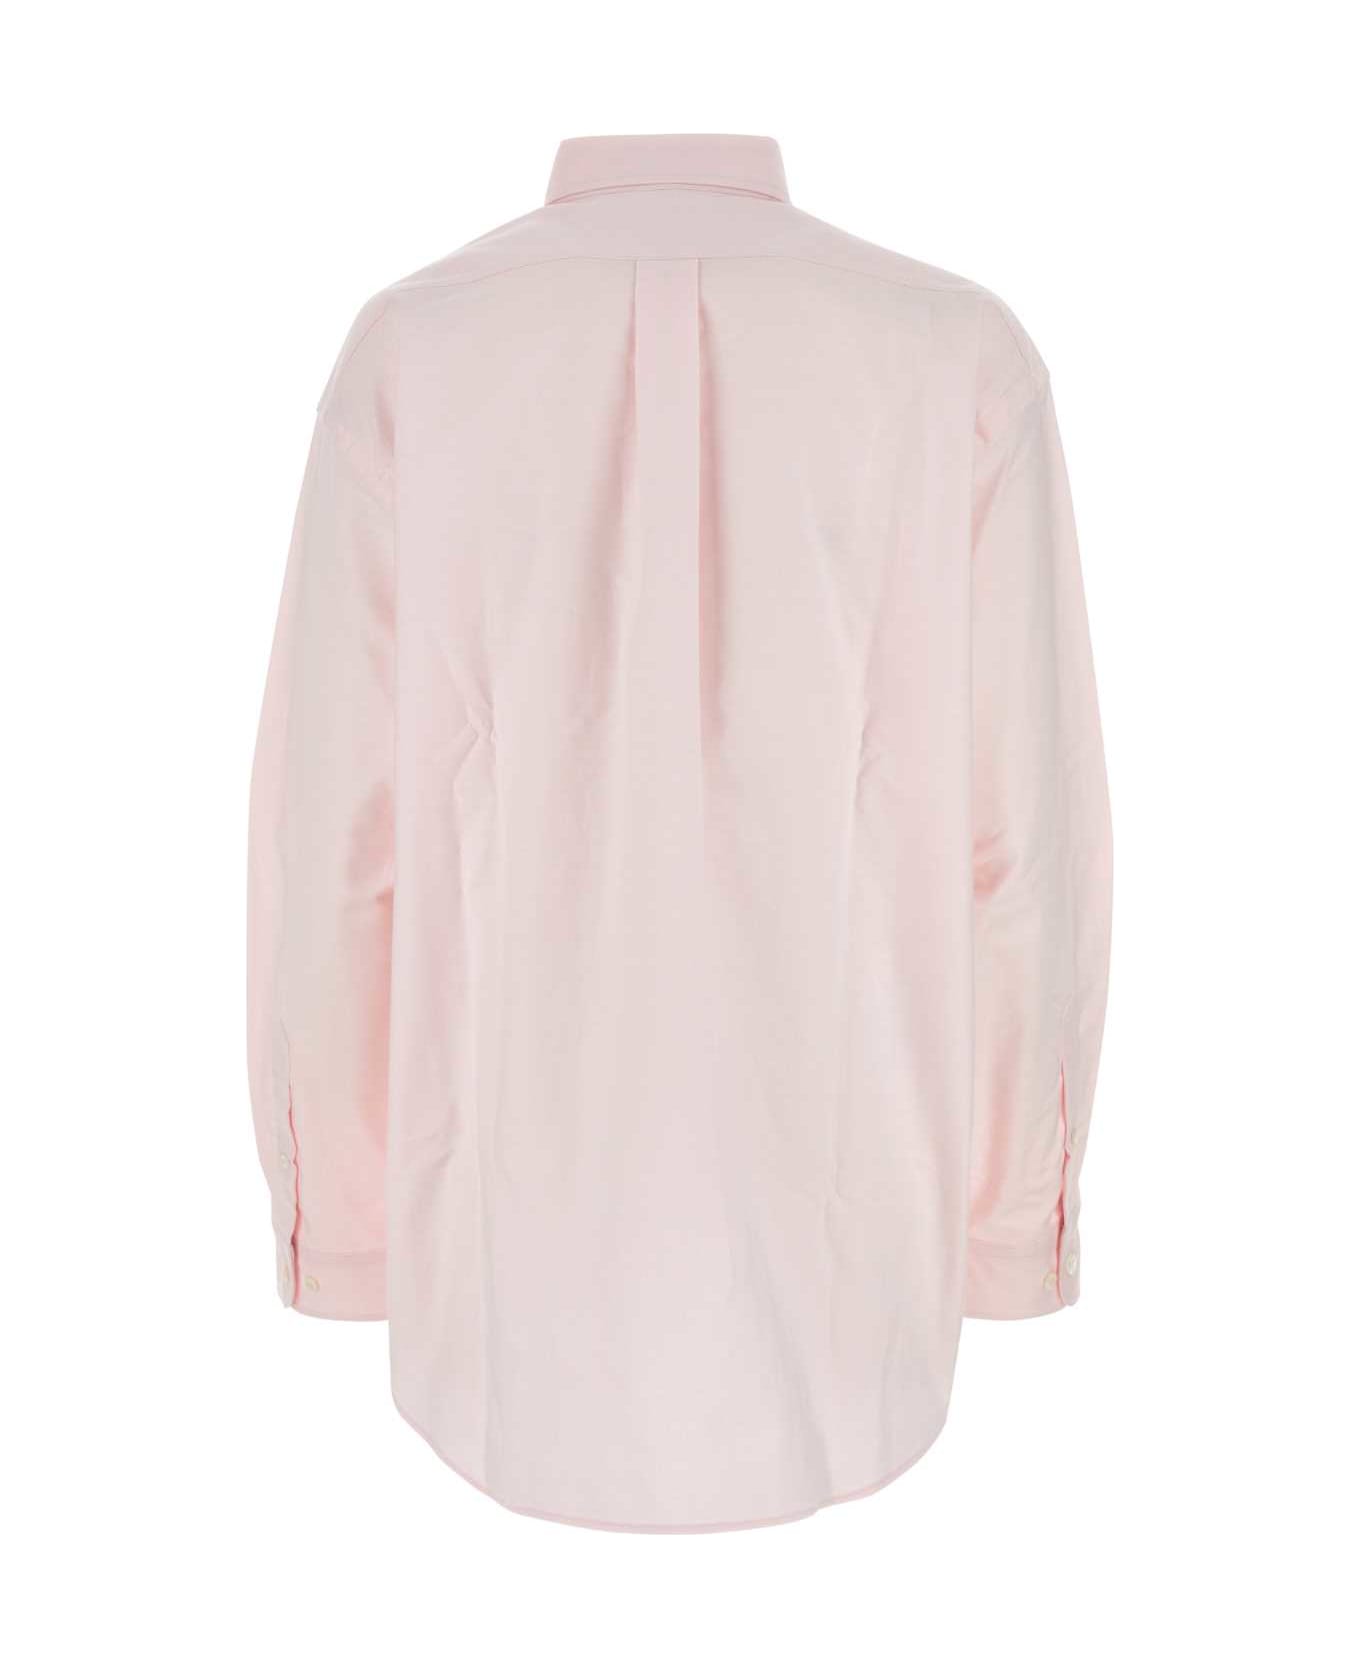 Prada Light Pink Oxford Oversize Shirt - ROSA